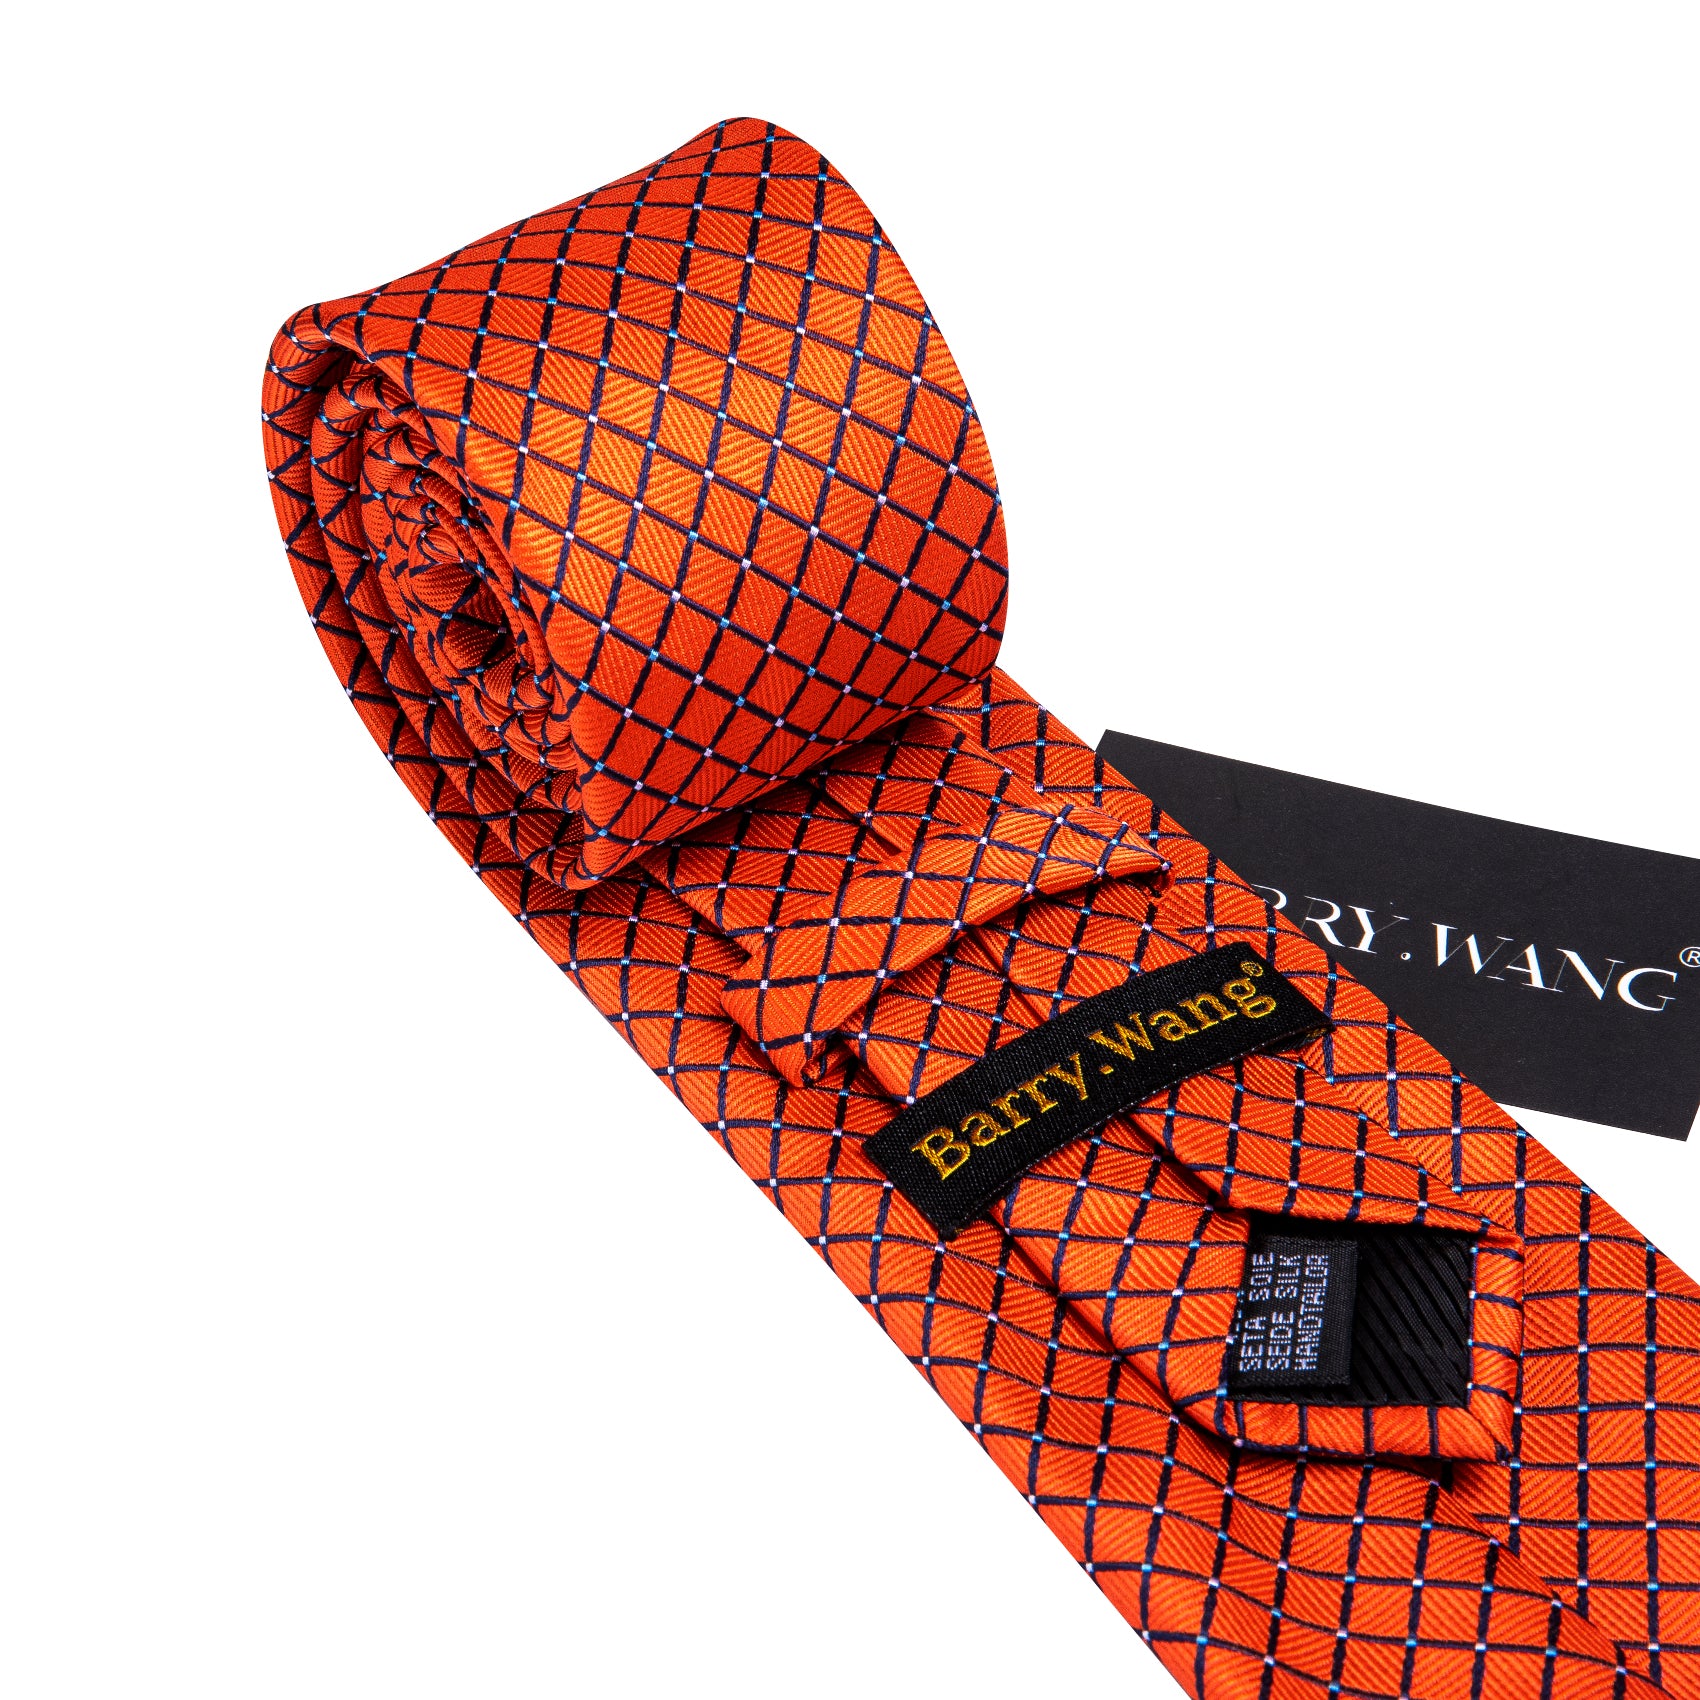 Orange Plaid Silk Tie Handkerchief Cufflinks Set